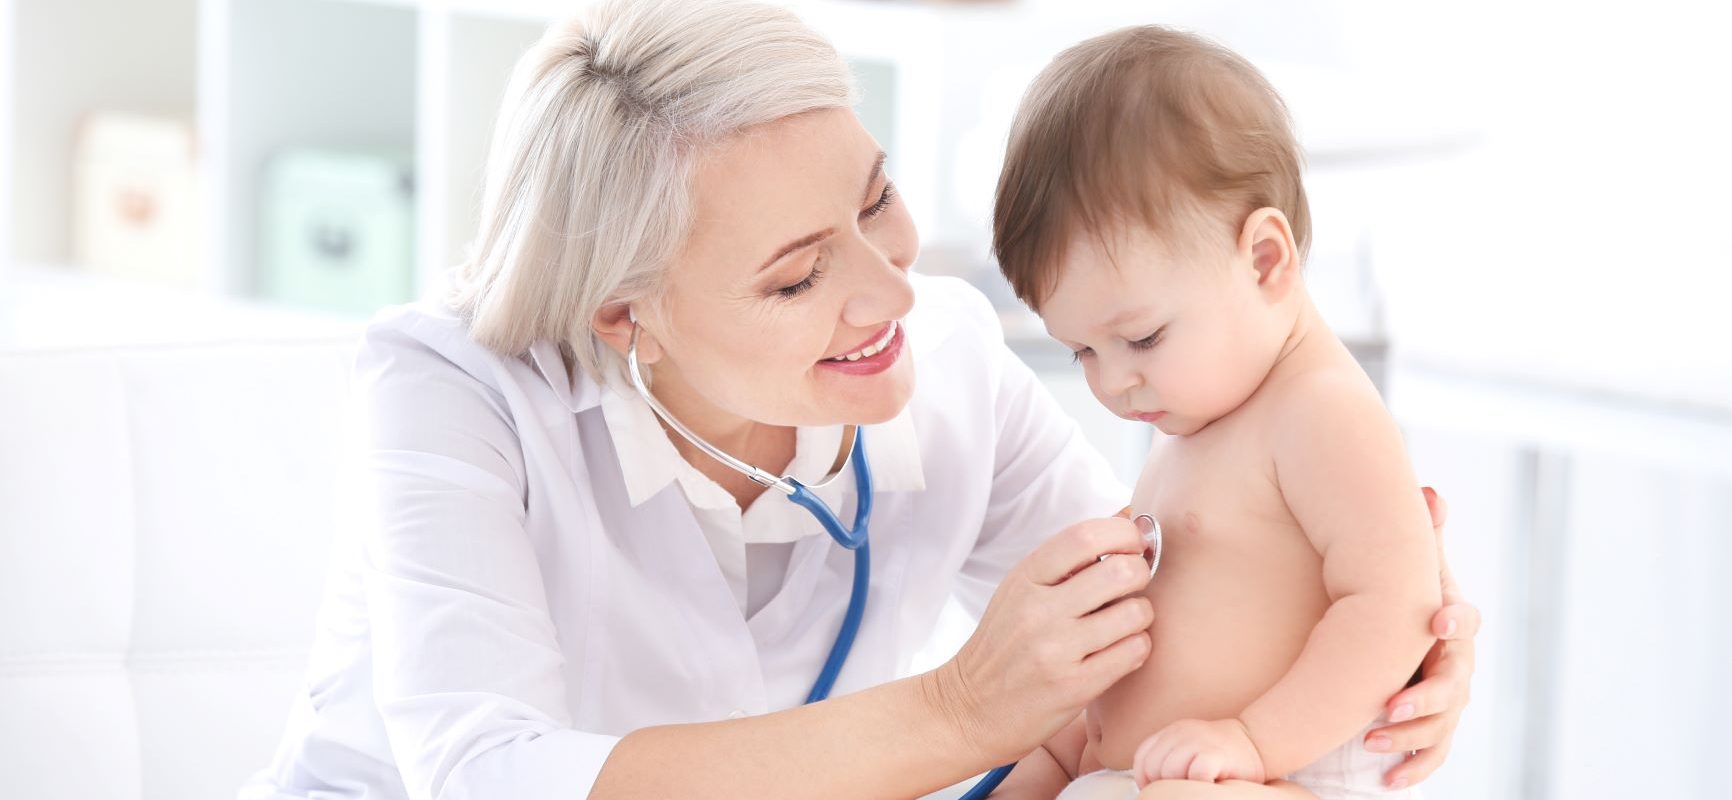 Pierwsze badania niemowlęcia - od jakich lekarzy zacząć wizyty kontrolne?